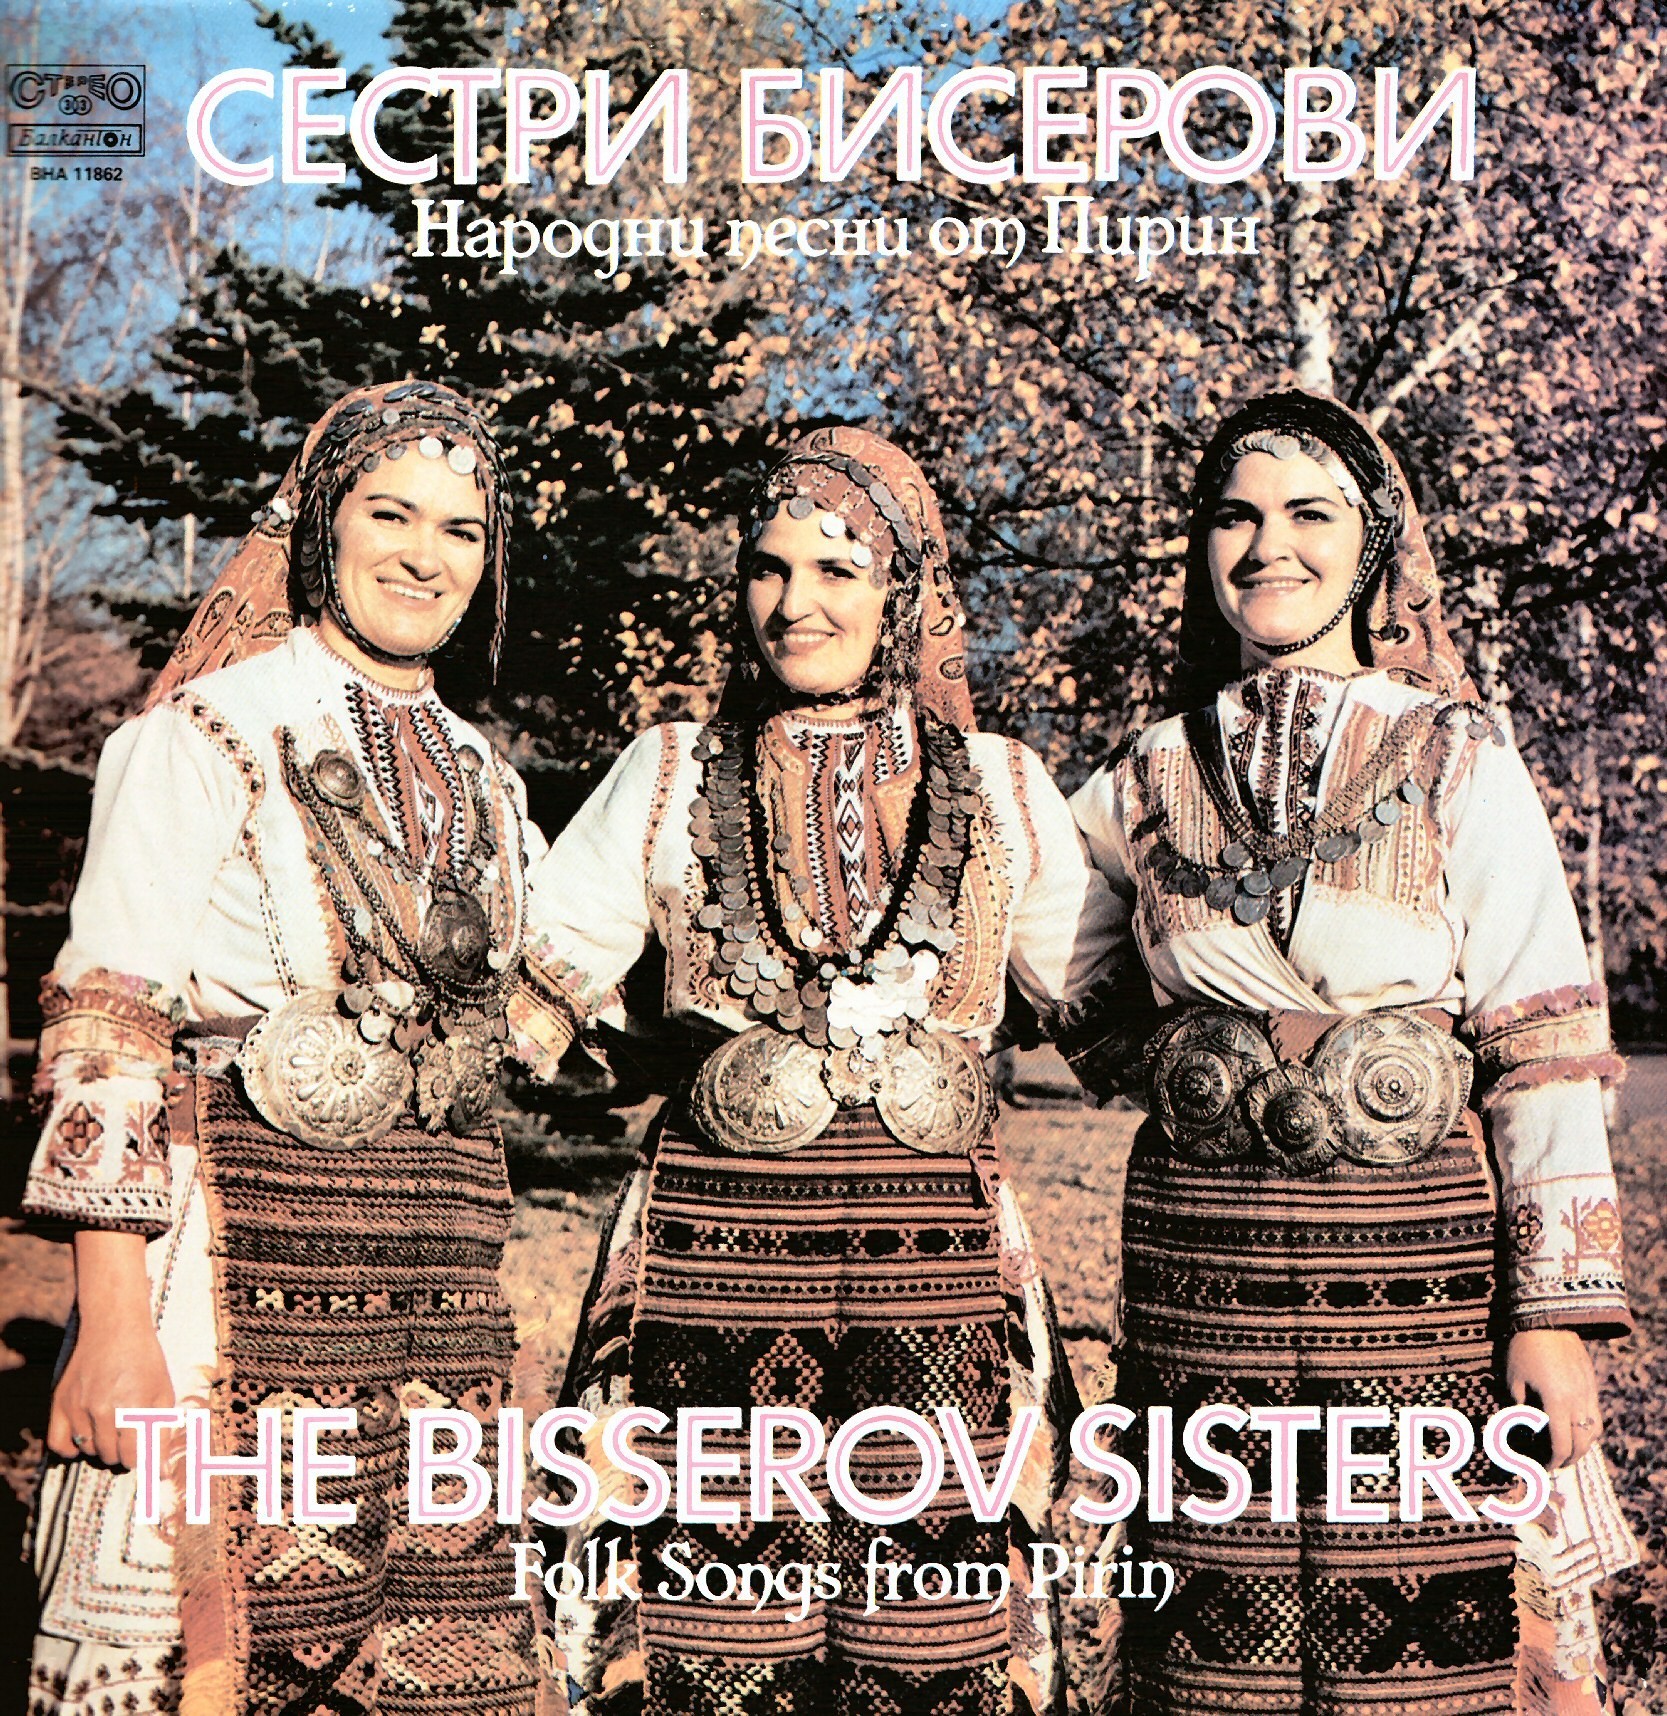 Народни песни от Пирин изпълняват Сестри Бисерови